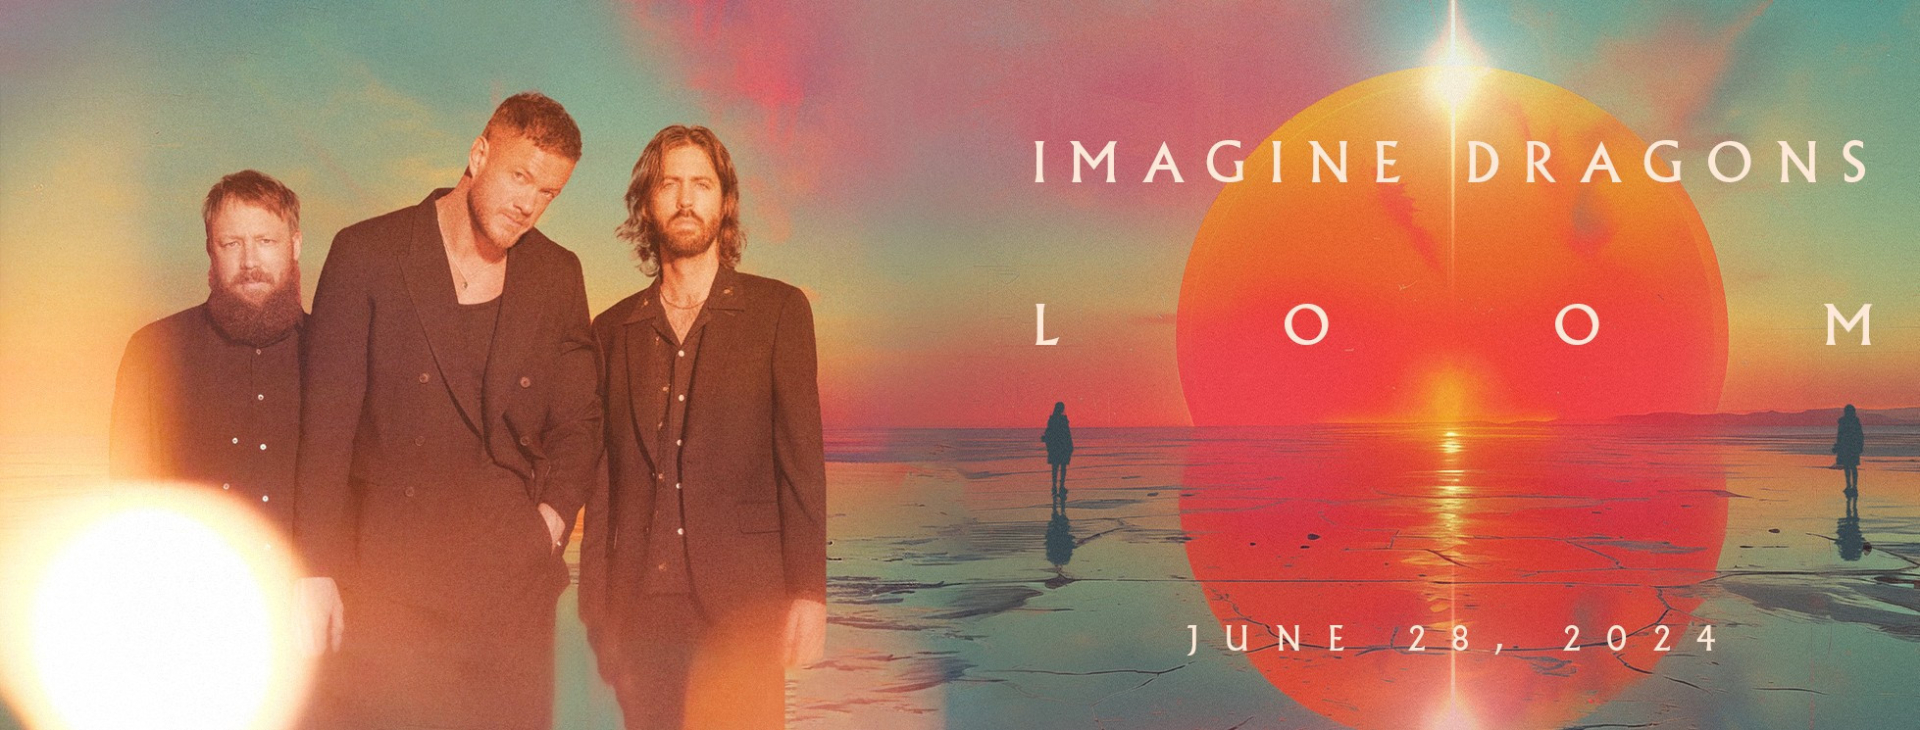 Imagine Dragons trở lại với album phòng thu thứ 6 mang tên “LOOM”, khẳng định vị thế ban nhạc rock hàng đầu thế giới - ảnh 1